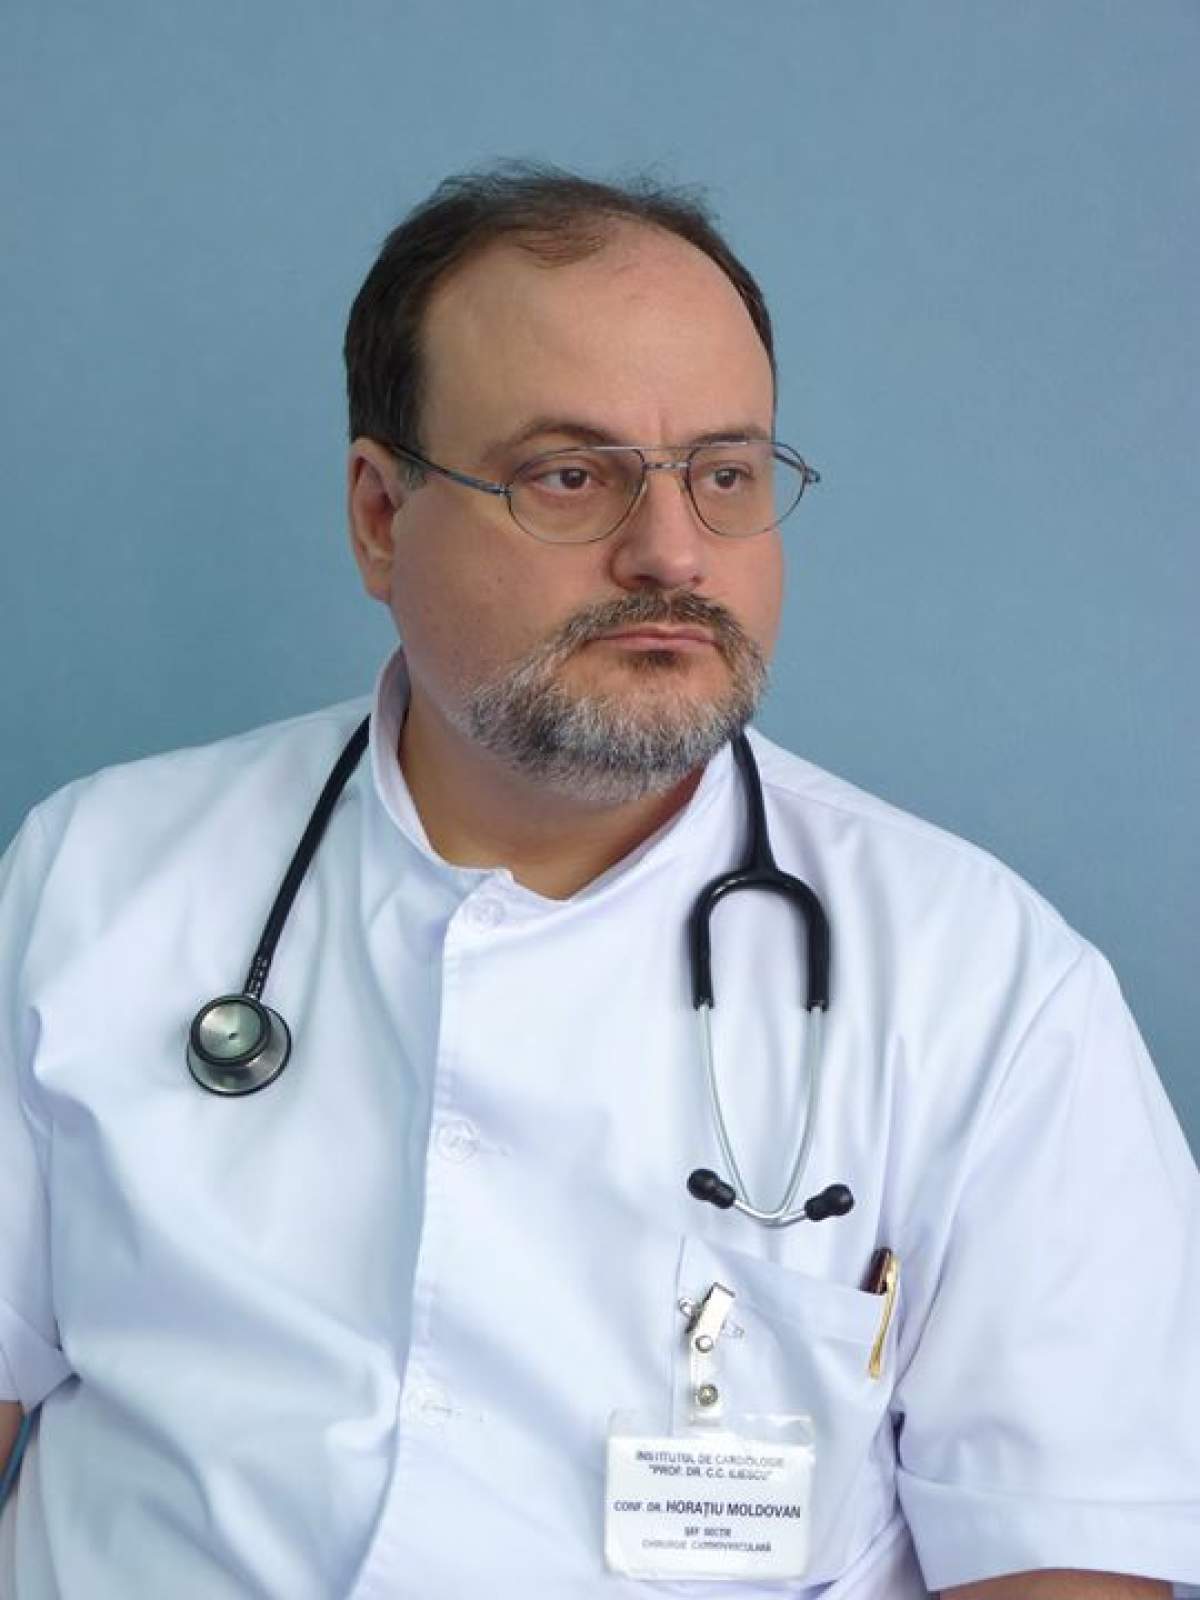 Tratamente inovatoare pentru pacienții de coronavirus în stare gravă! Horațiu Moldovan: "Introducem o terapie cu plasmă hiperimună"